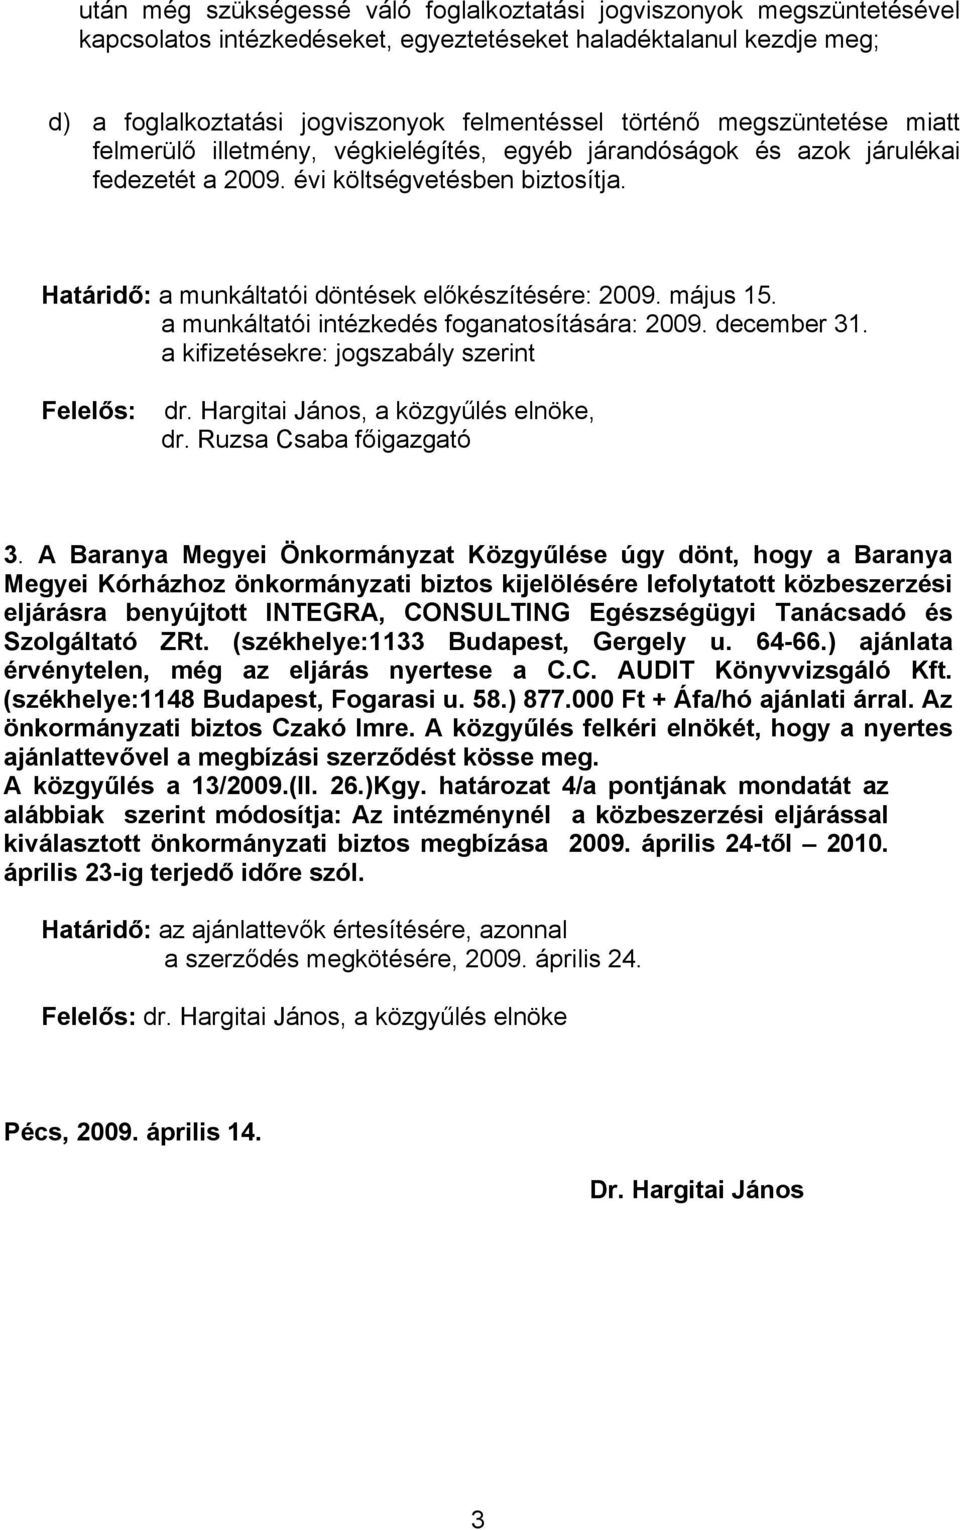 május 15. a munkáltatói intézkedés foganatosítására: 2009. december 31. a kifizetésekre: jogszabály szerint Felelős: dr. Hargitai János, a közgyűlés elnöke, dr. Ruzsa Csaba főigazgató 3.